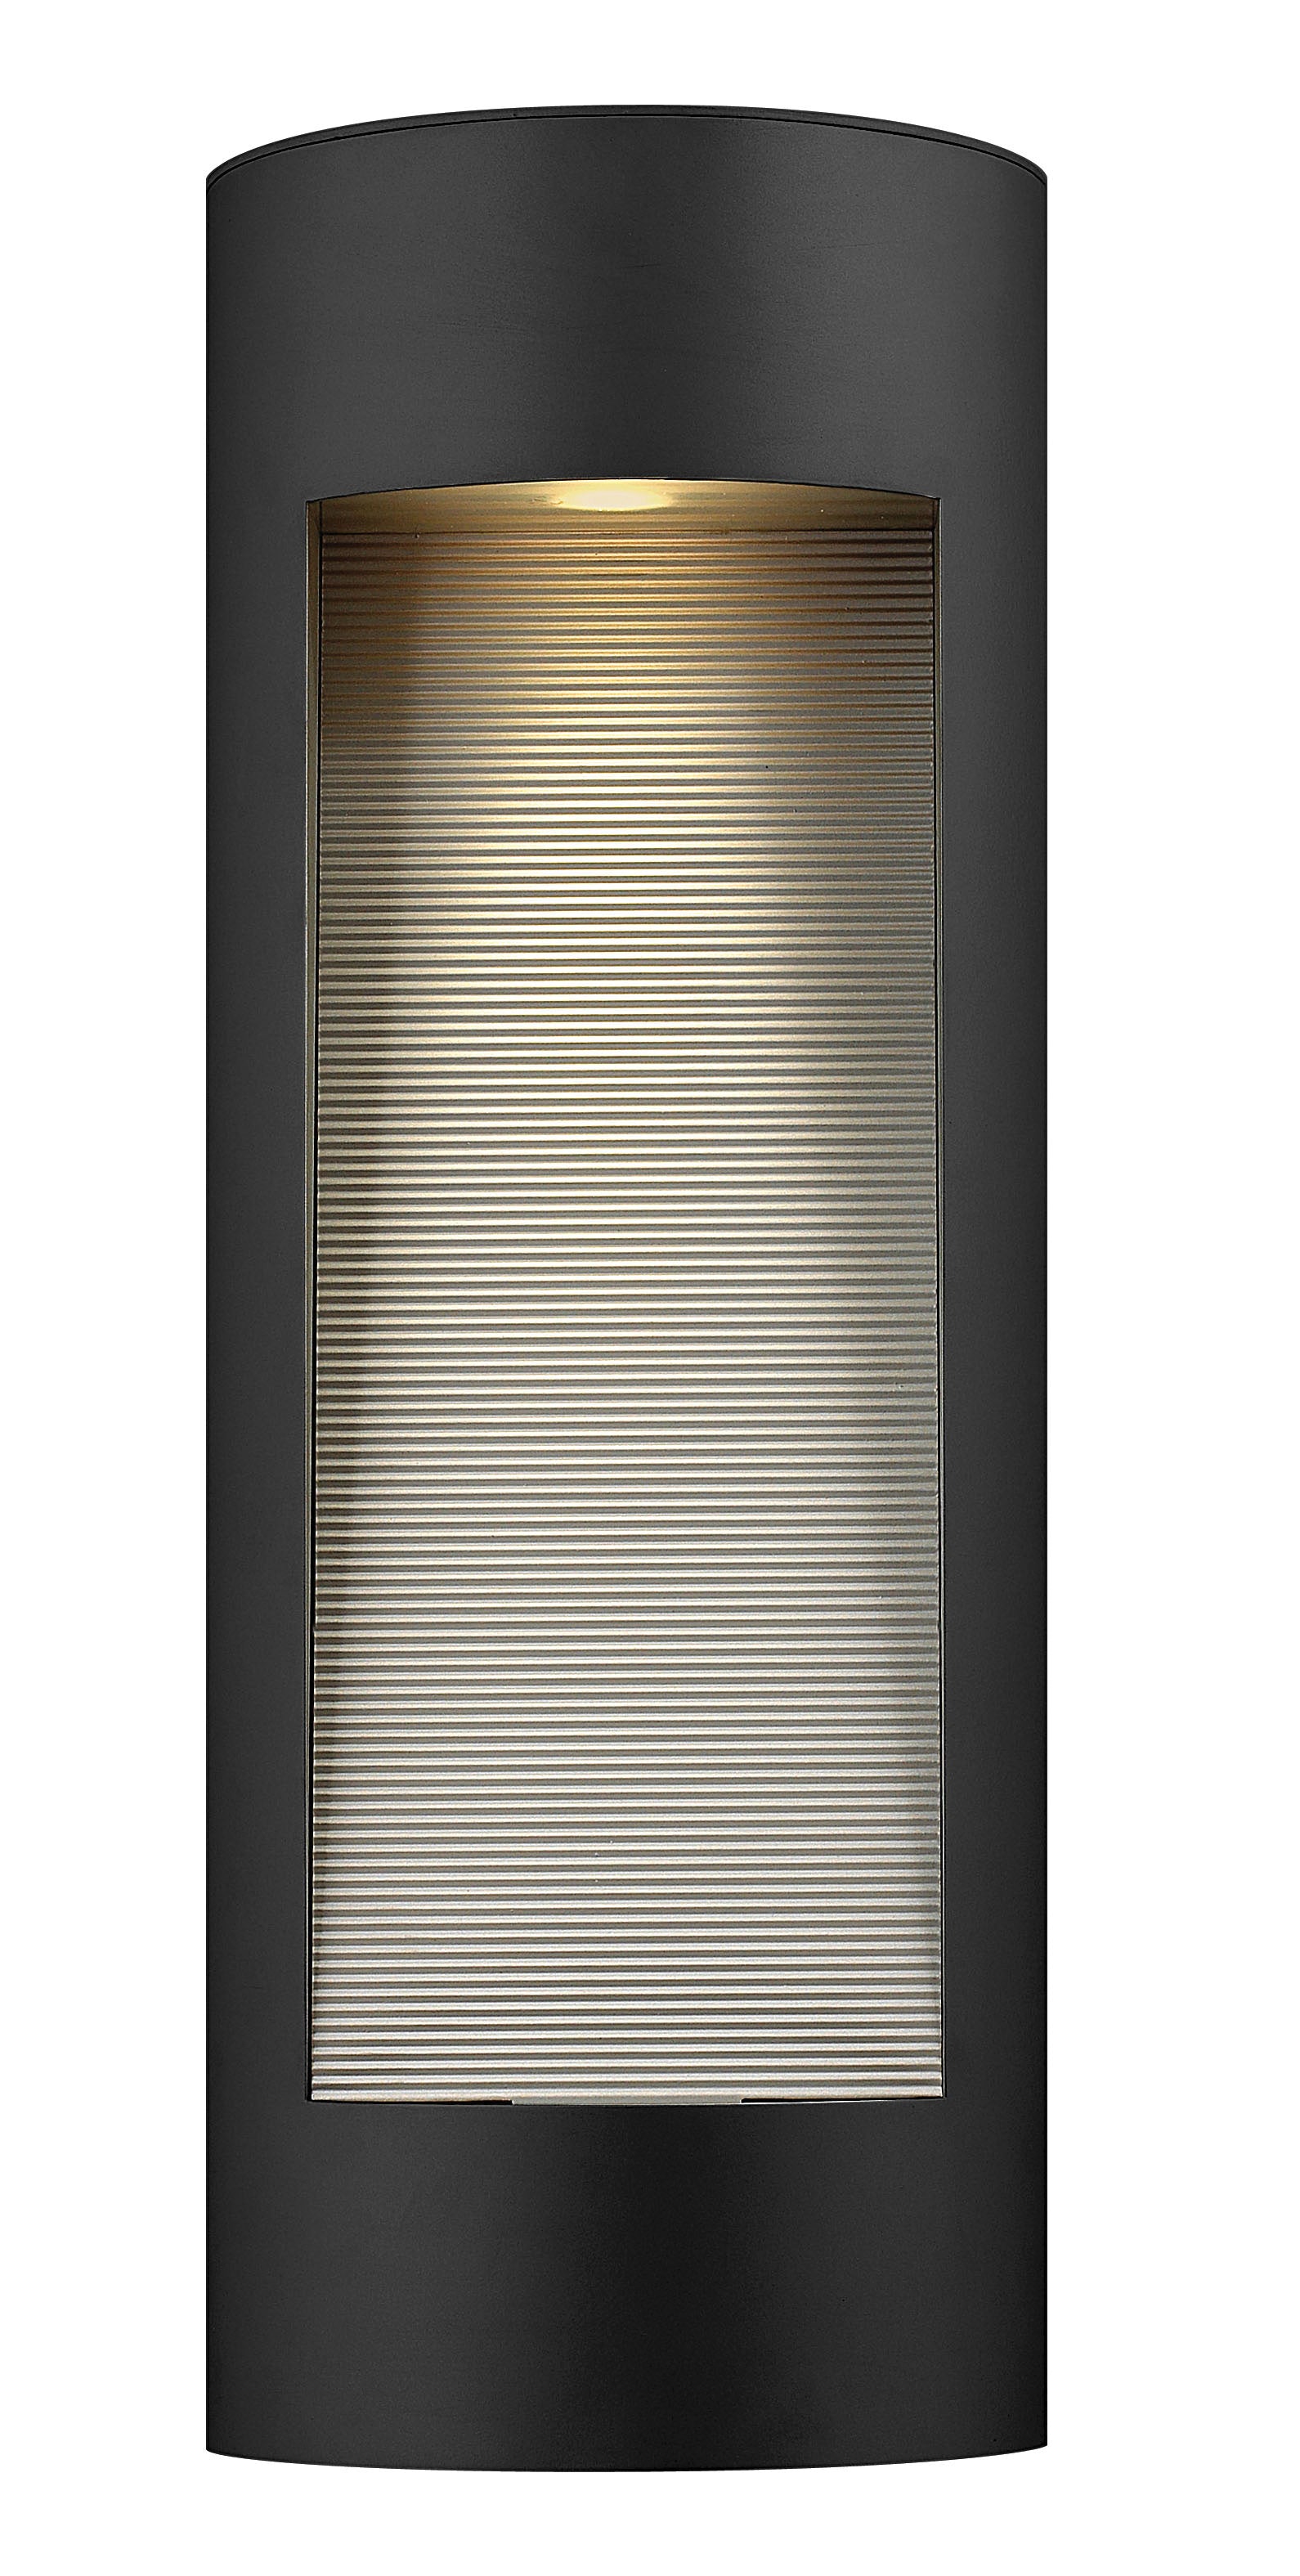 LUNA Outdoor sconce Black INTEGRATED LED - 1664SK-LED | HINKLEY